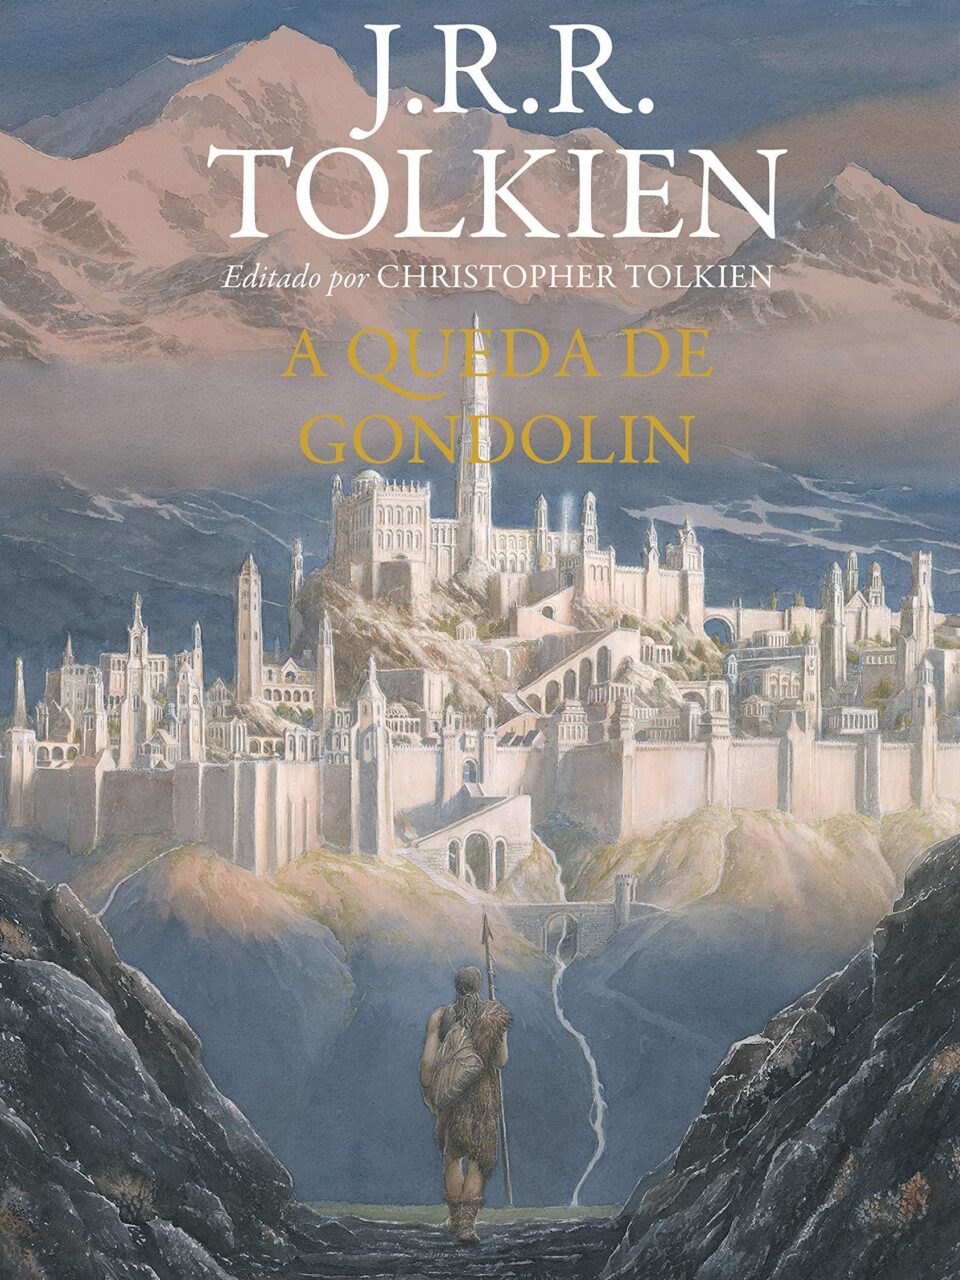 A Queda de Gondolin – J. R. R. Tolkien